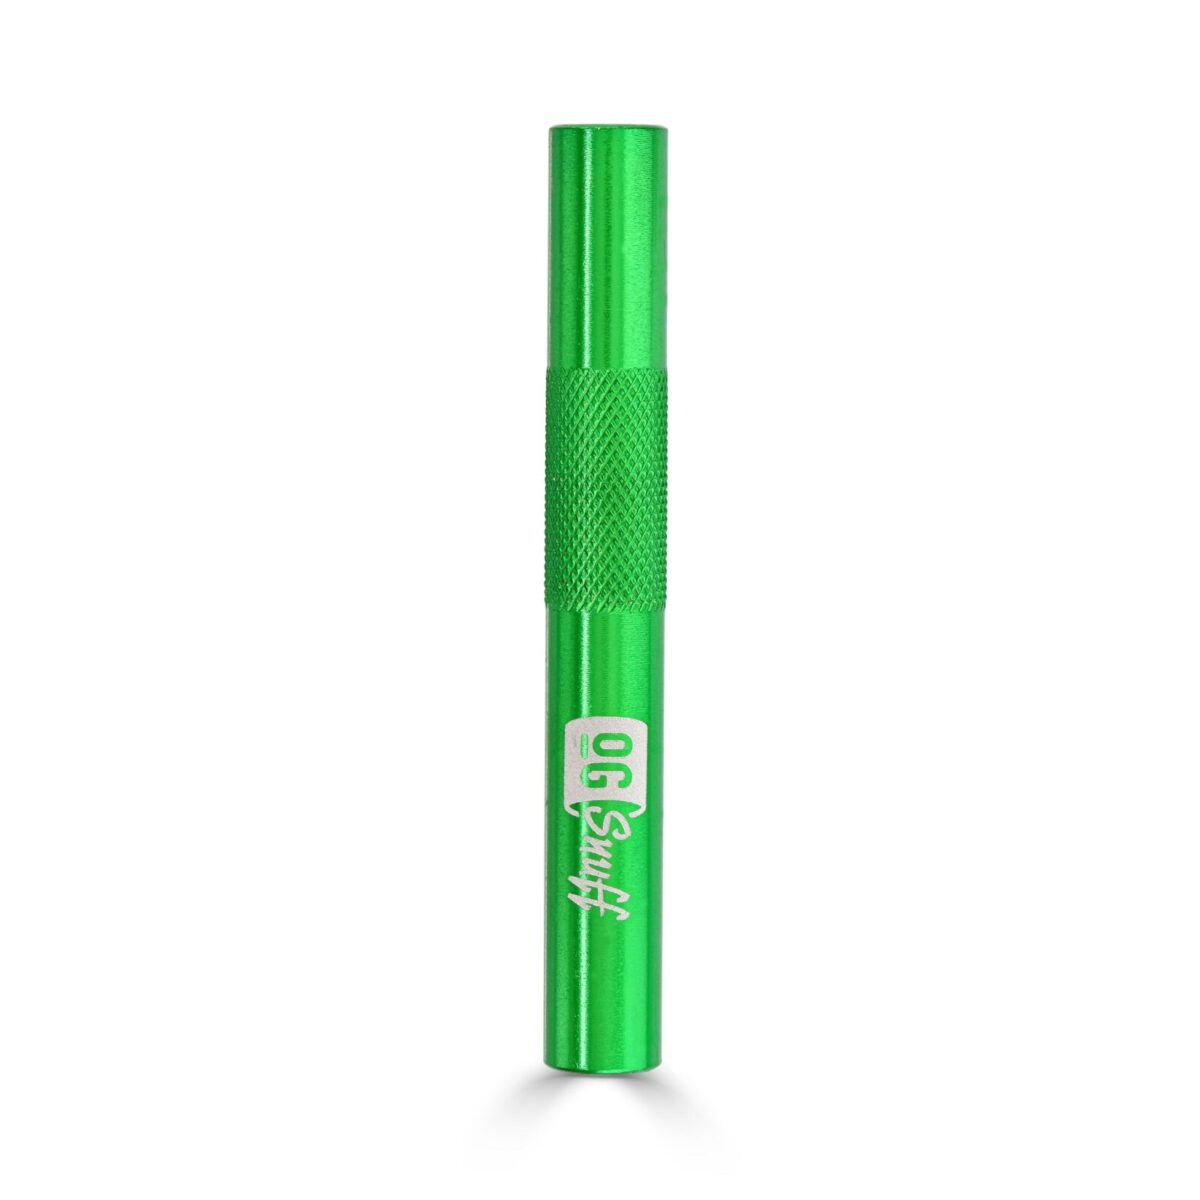 Emerald Green Aluminium Snuff Straw from OGSnuff